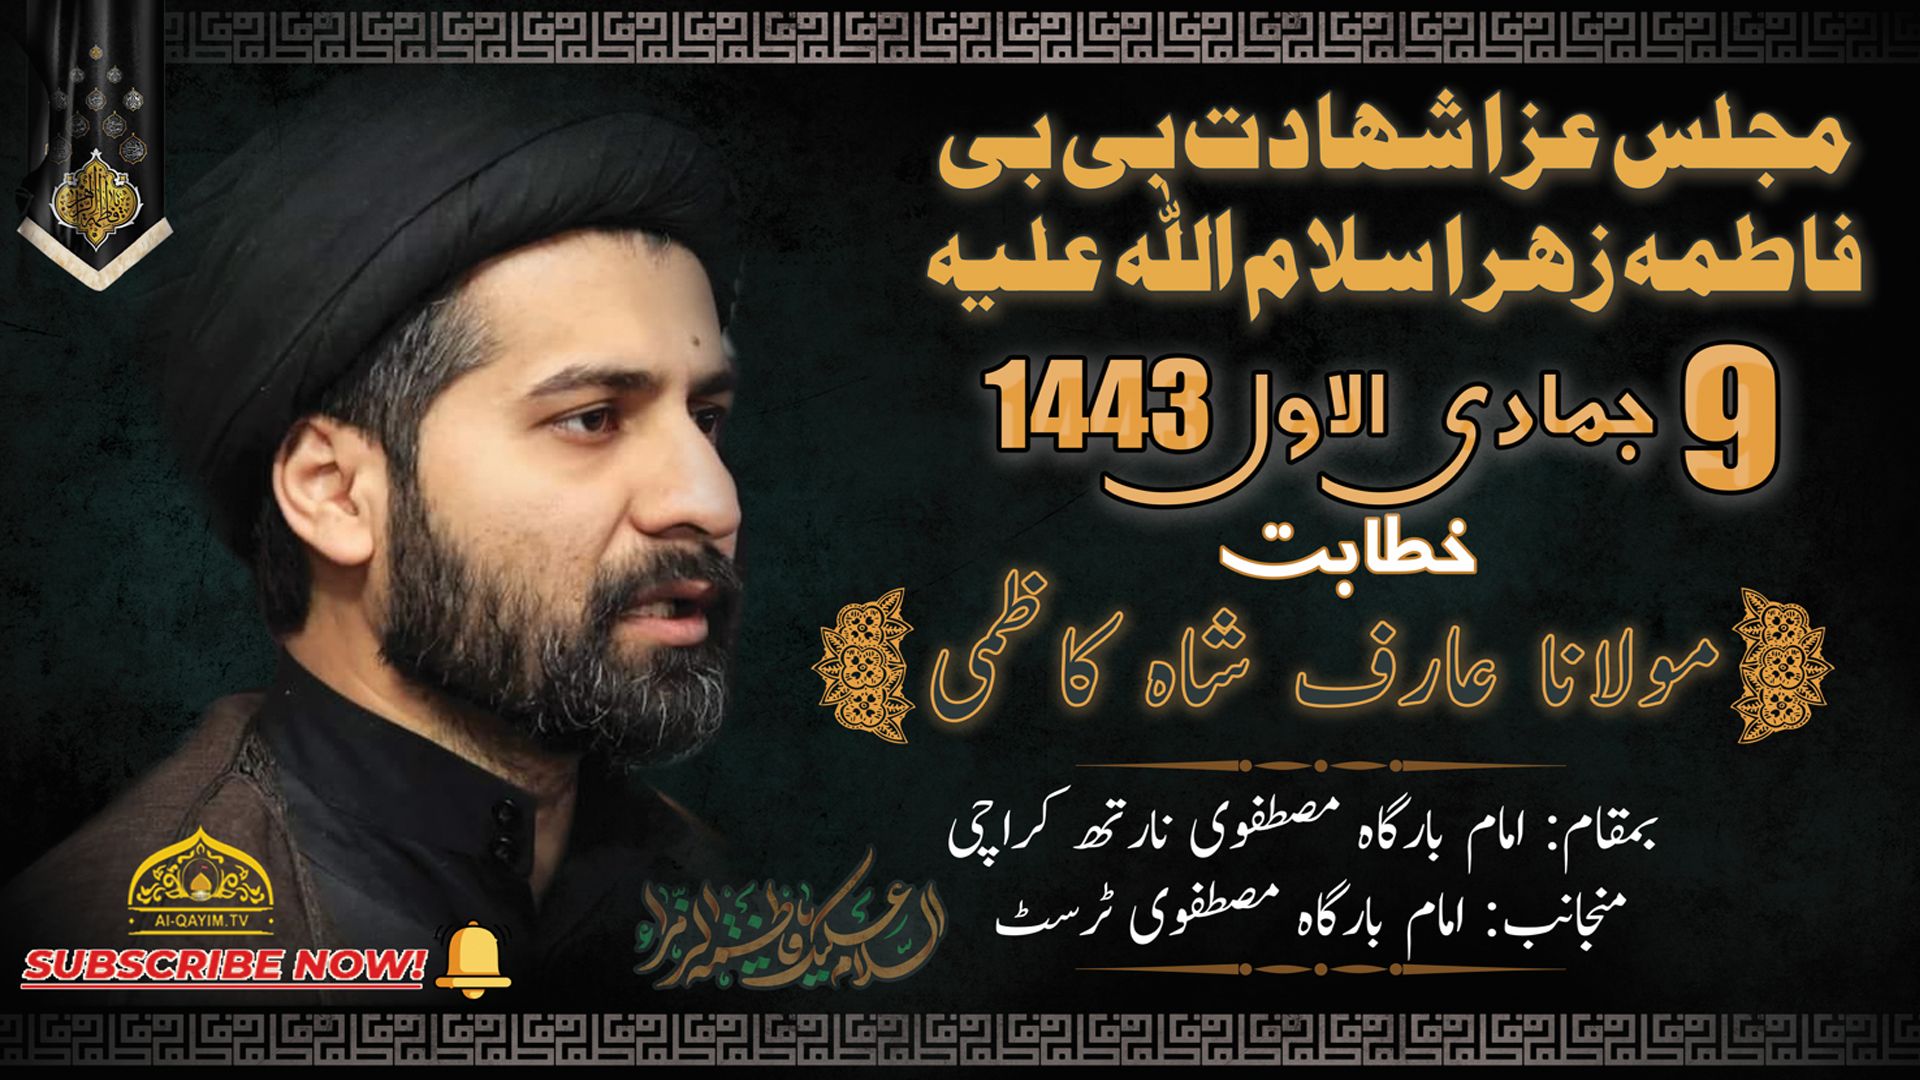 Majlis | Arif Shah Kazmi | Shahadat Bibi Fatima | 14th December 2021 Imam Bargah Mustafvi - Karachi